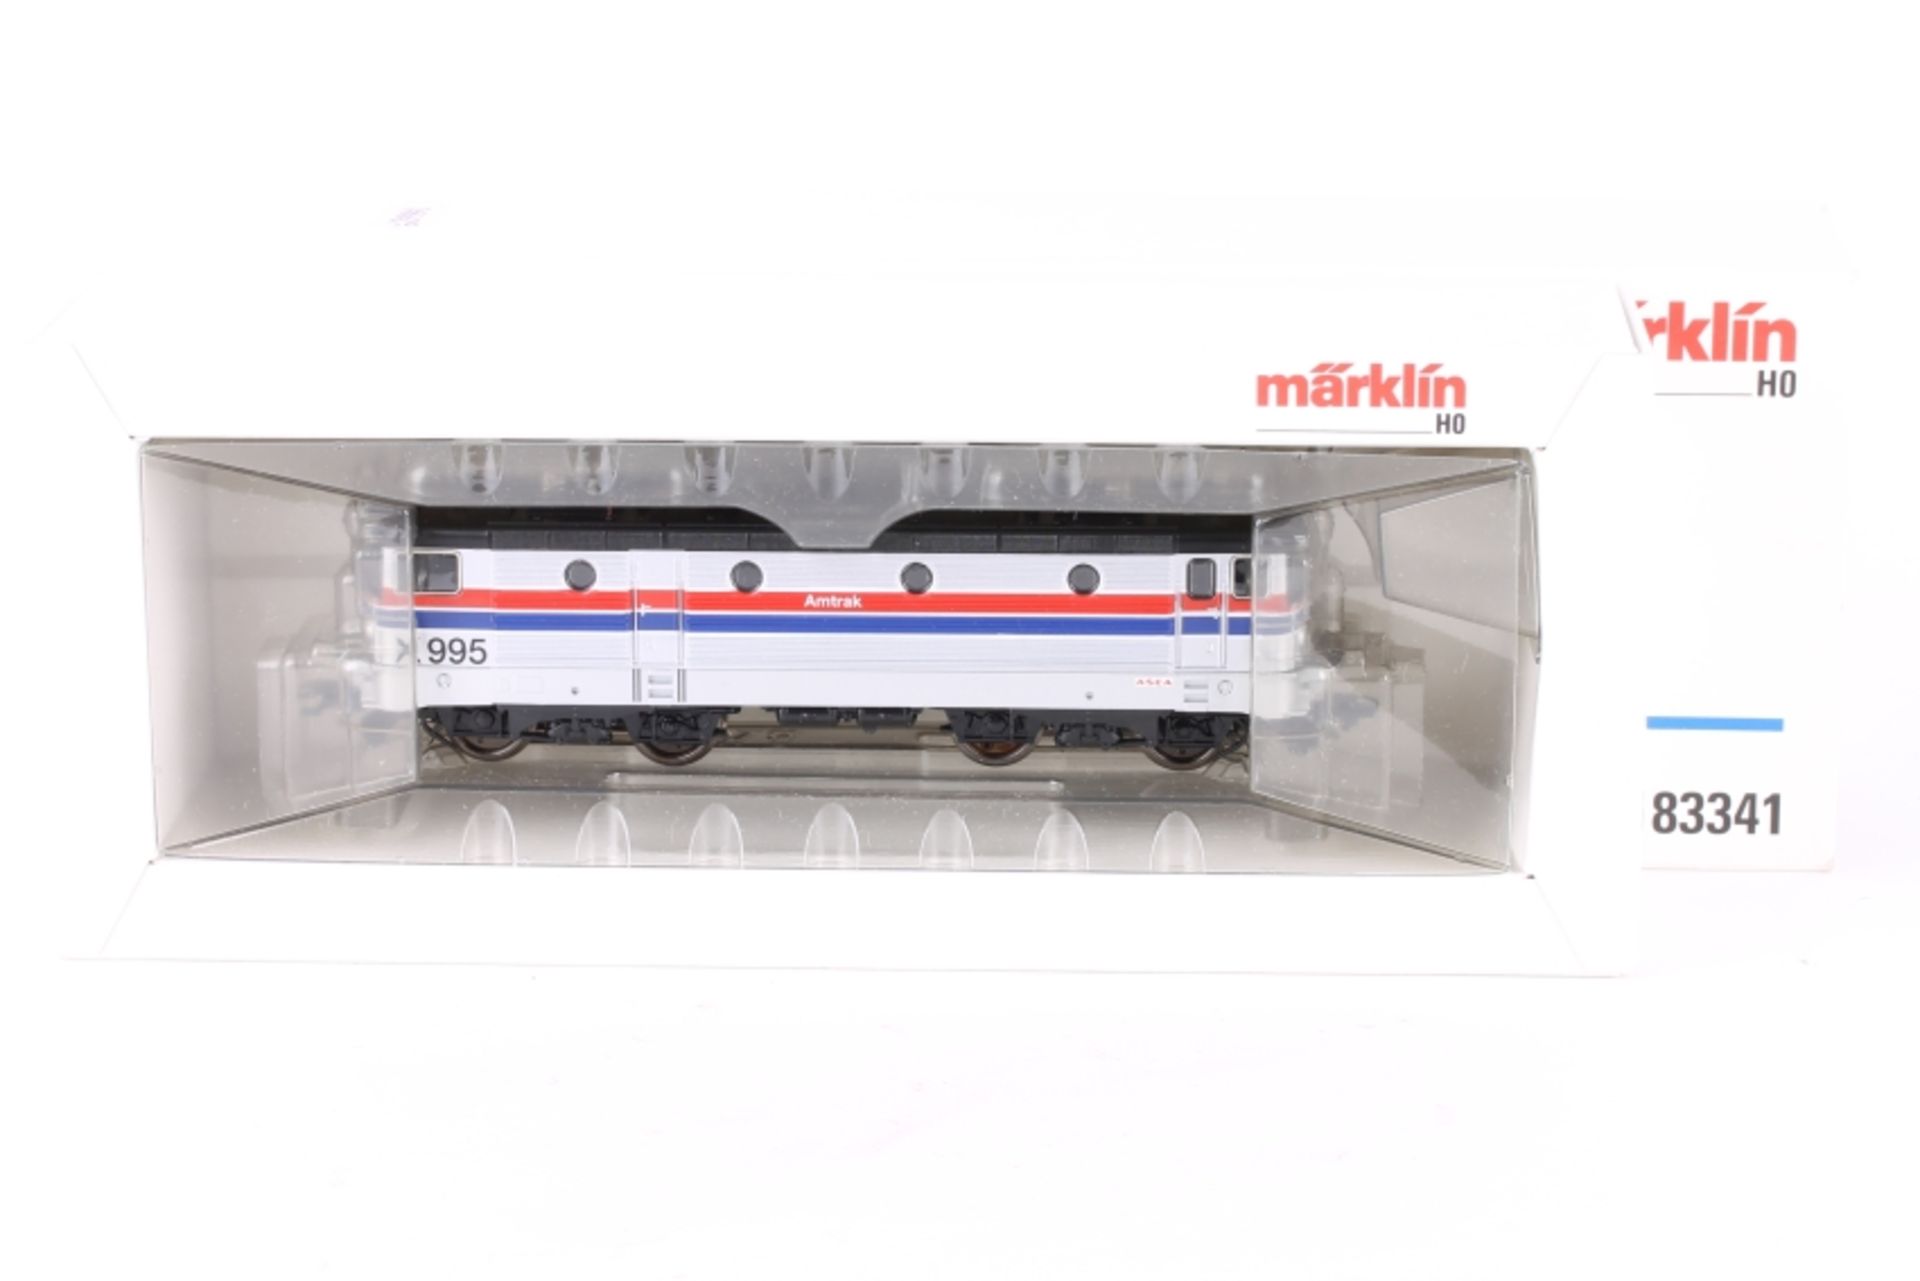 Märklin 83341, Elektrolok "X 995" der Amtrak Märklin 83341, Elektrolok "X 995" der Amtrak, Insider-